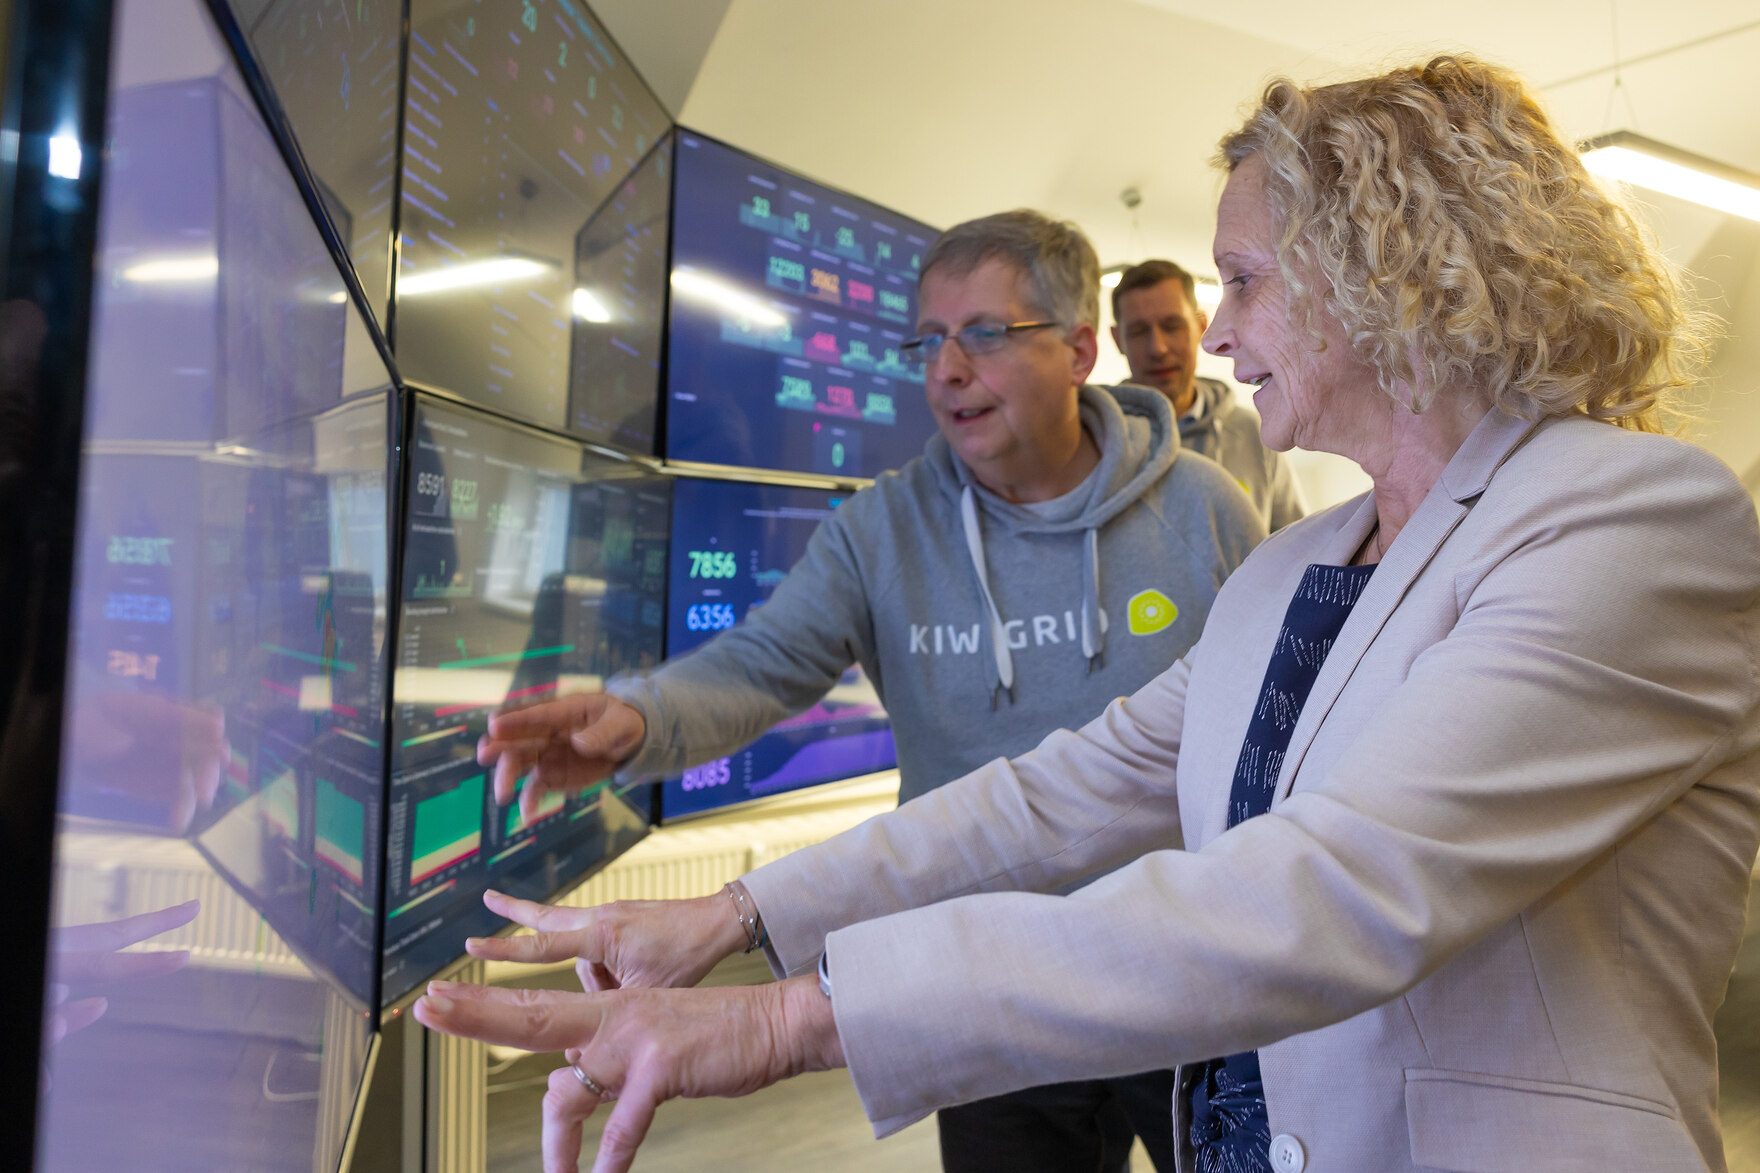 Staatssekretärin Ines Fröhlich steht neben einem Mann und zeigt auf einen Bildschirm.